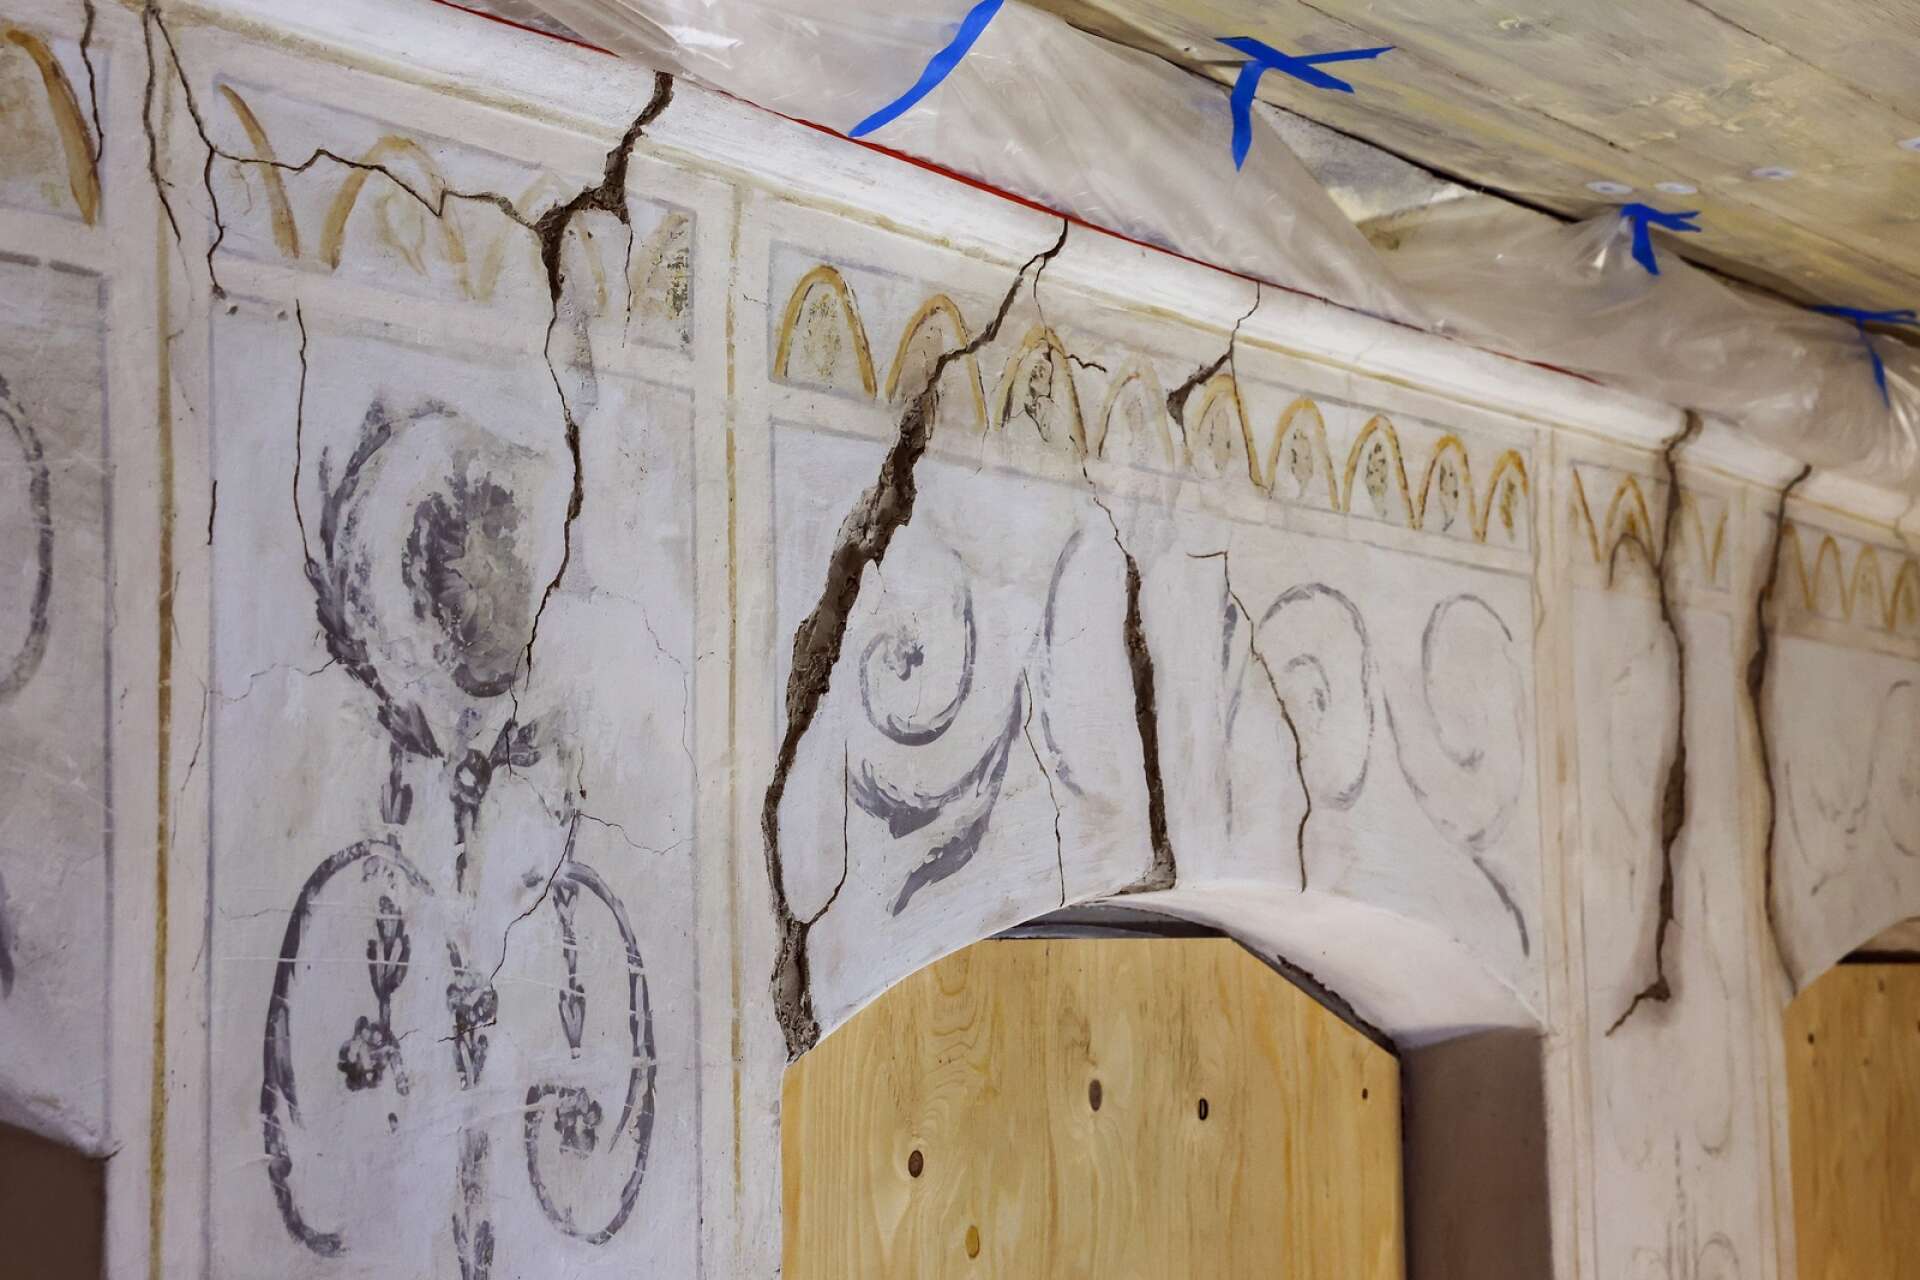 Stora sprickor i väggarna har äventyrat husets framtid. Nu konserveras och restaureras väggarna av experter.